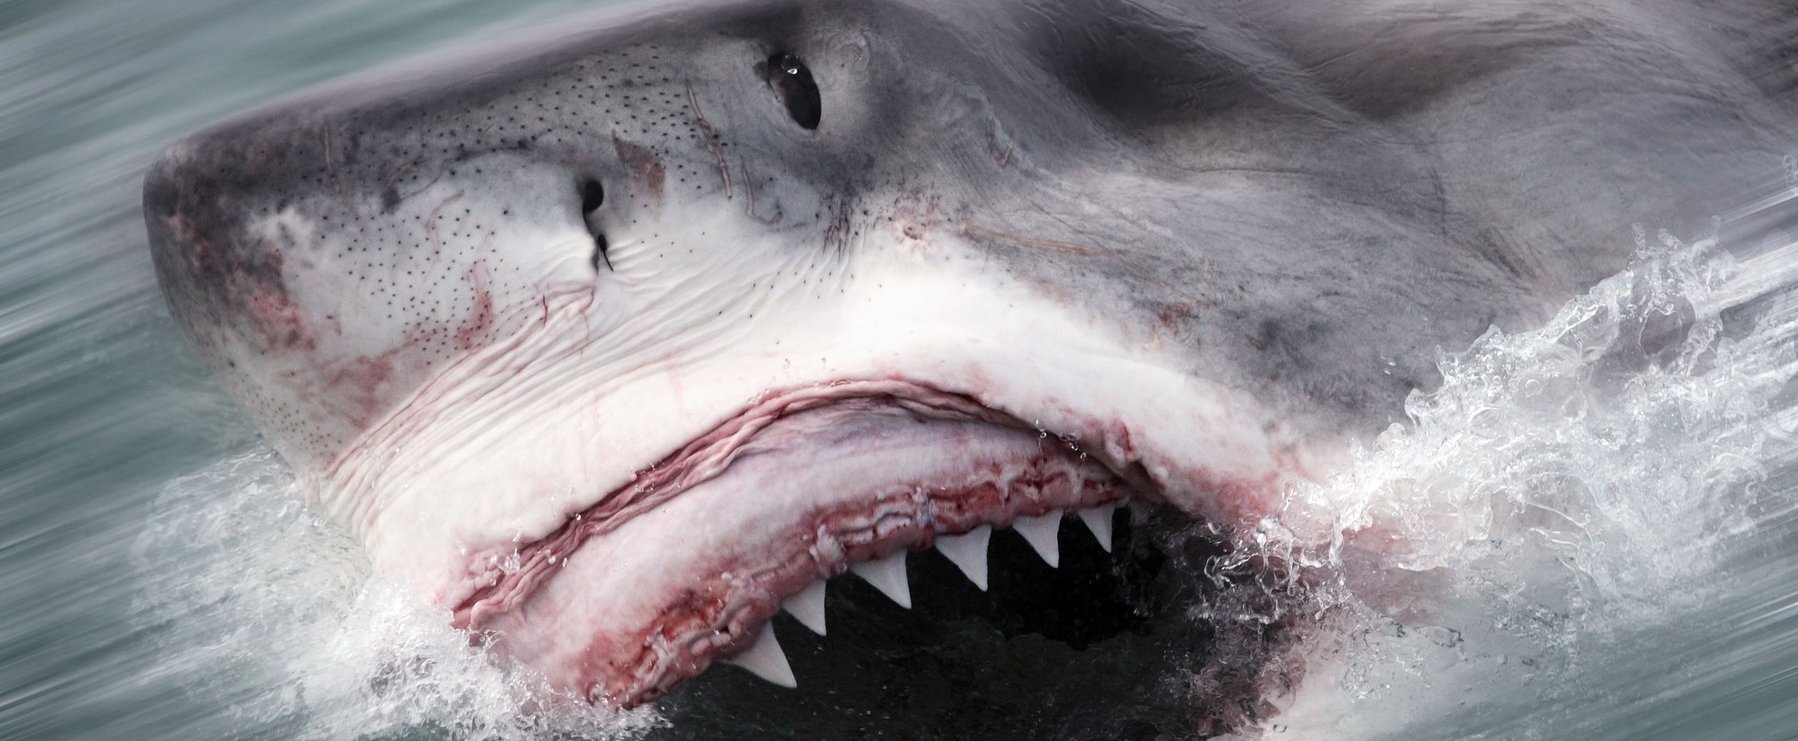 Brutális cápatámadás videóval, több végtagja is leszakadt az áldozatoknak